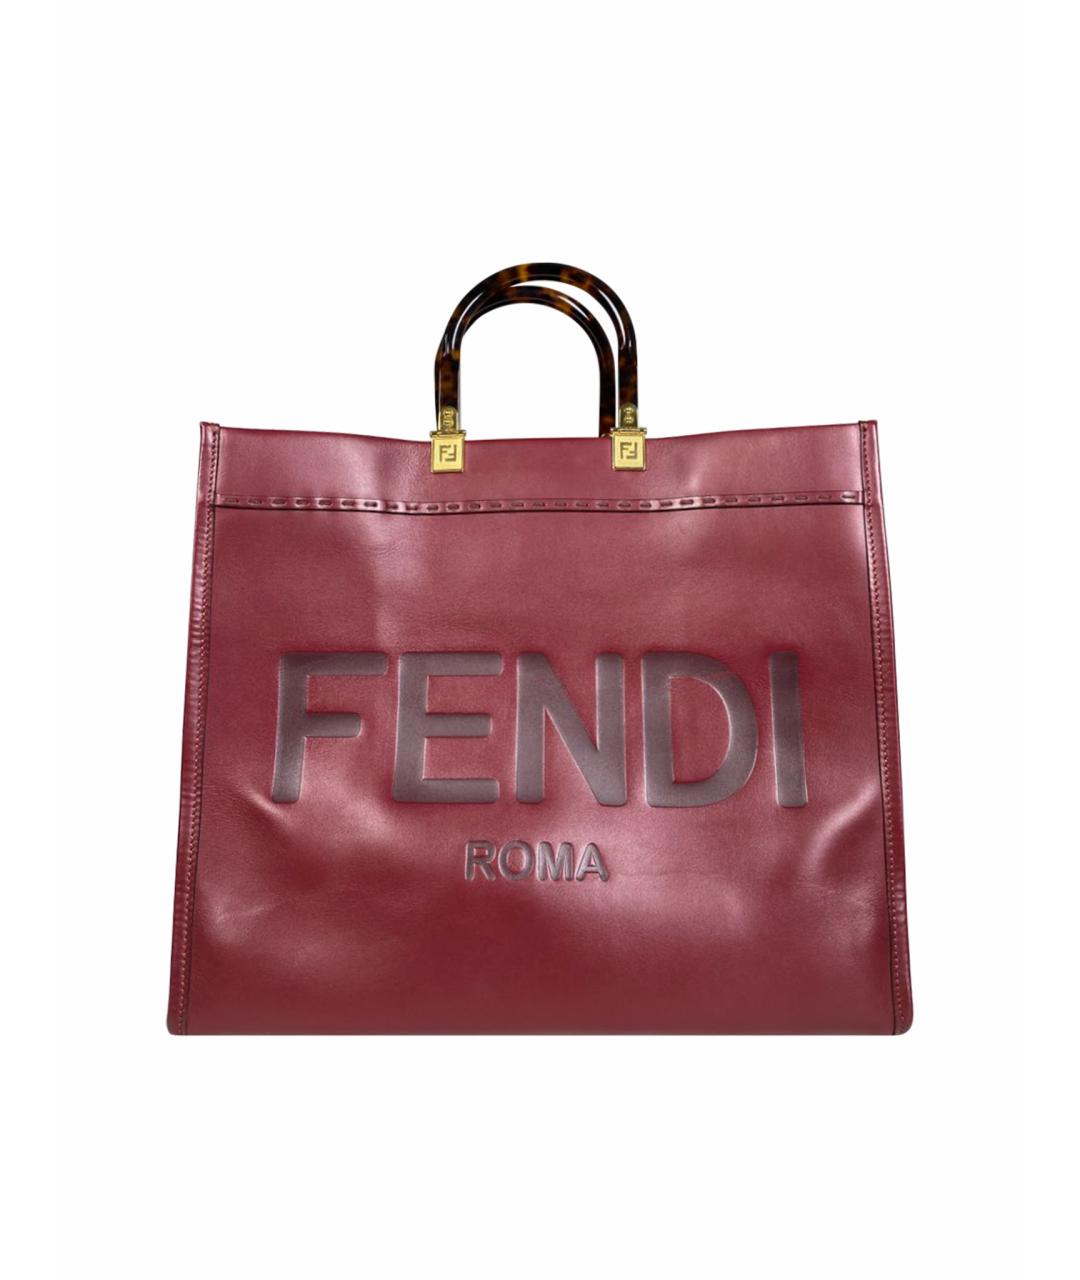 FENDI Бордовая кожаная сумка с короткими ручками, фото 1